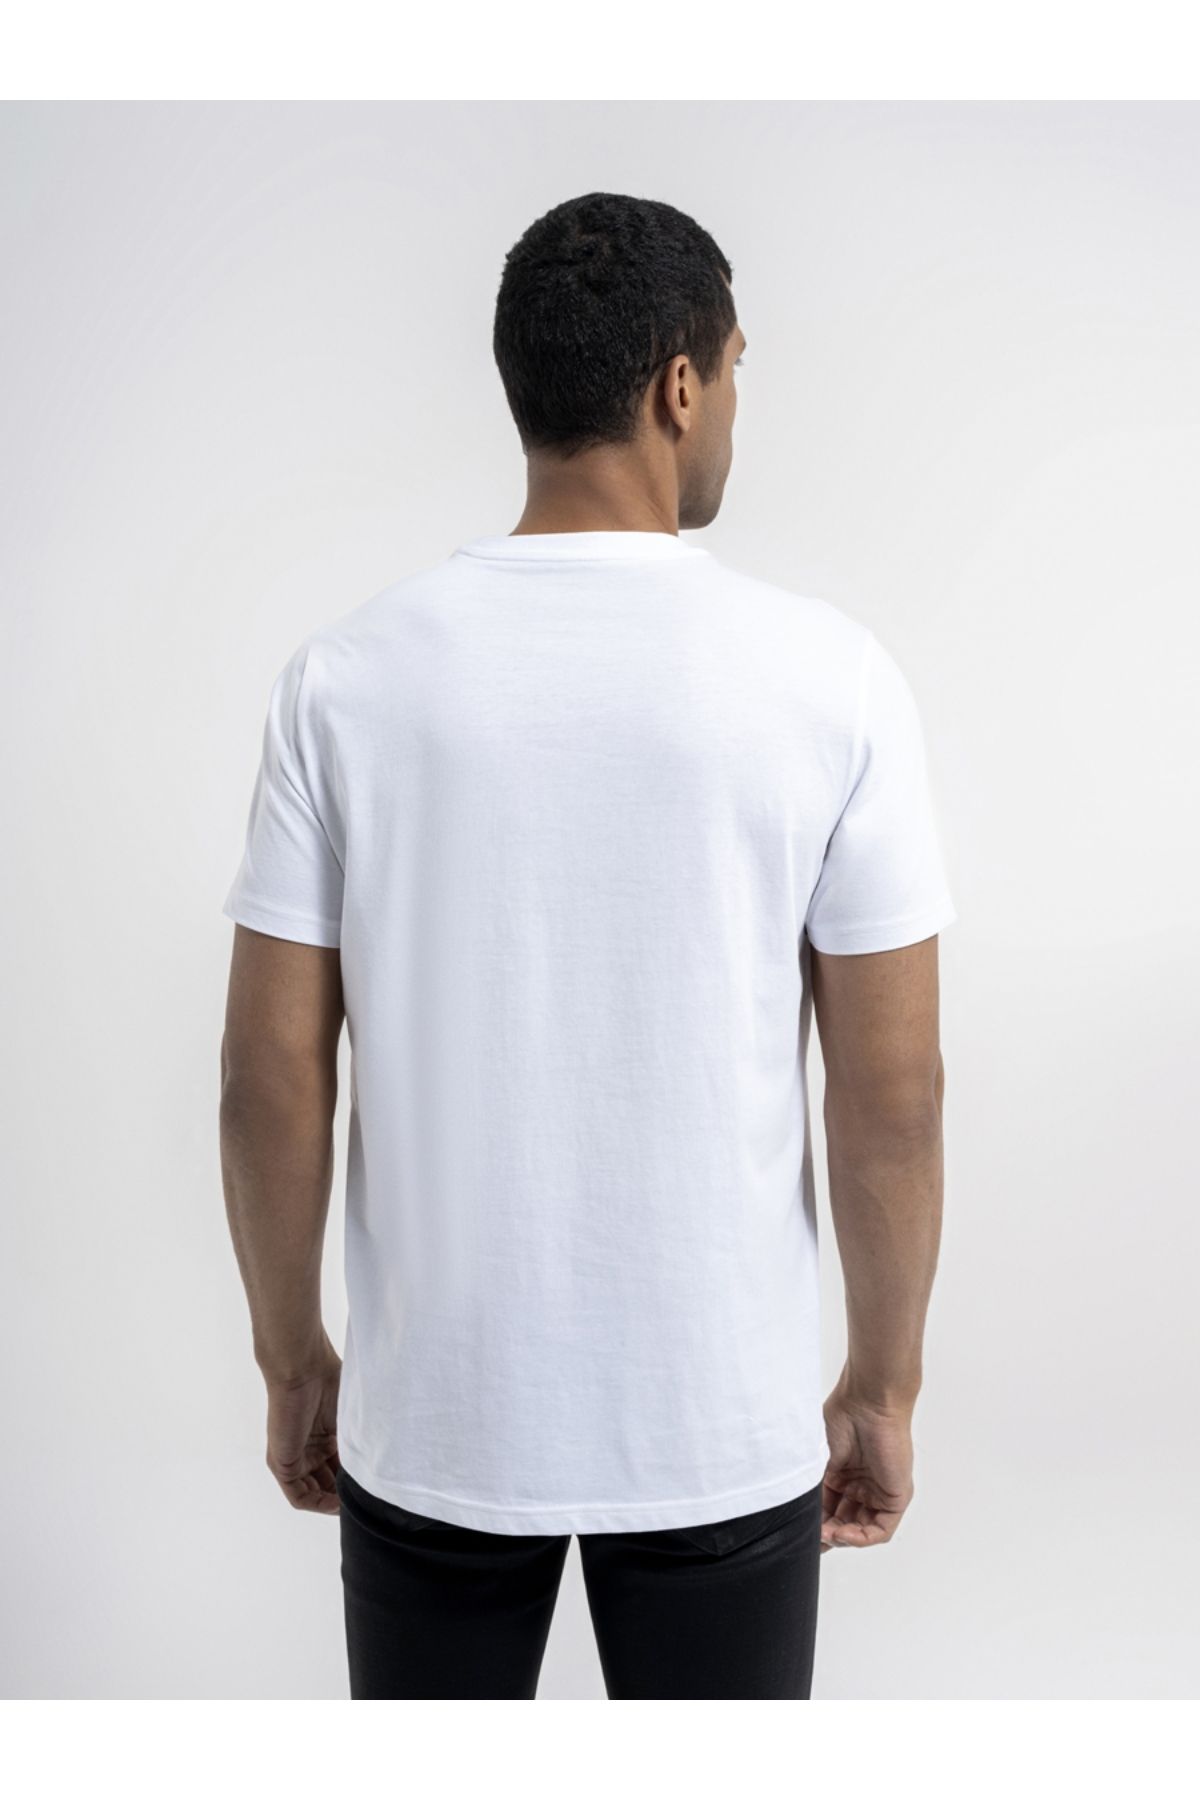 Loft شرت سفید مردانه LF2036418